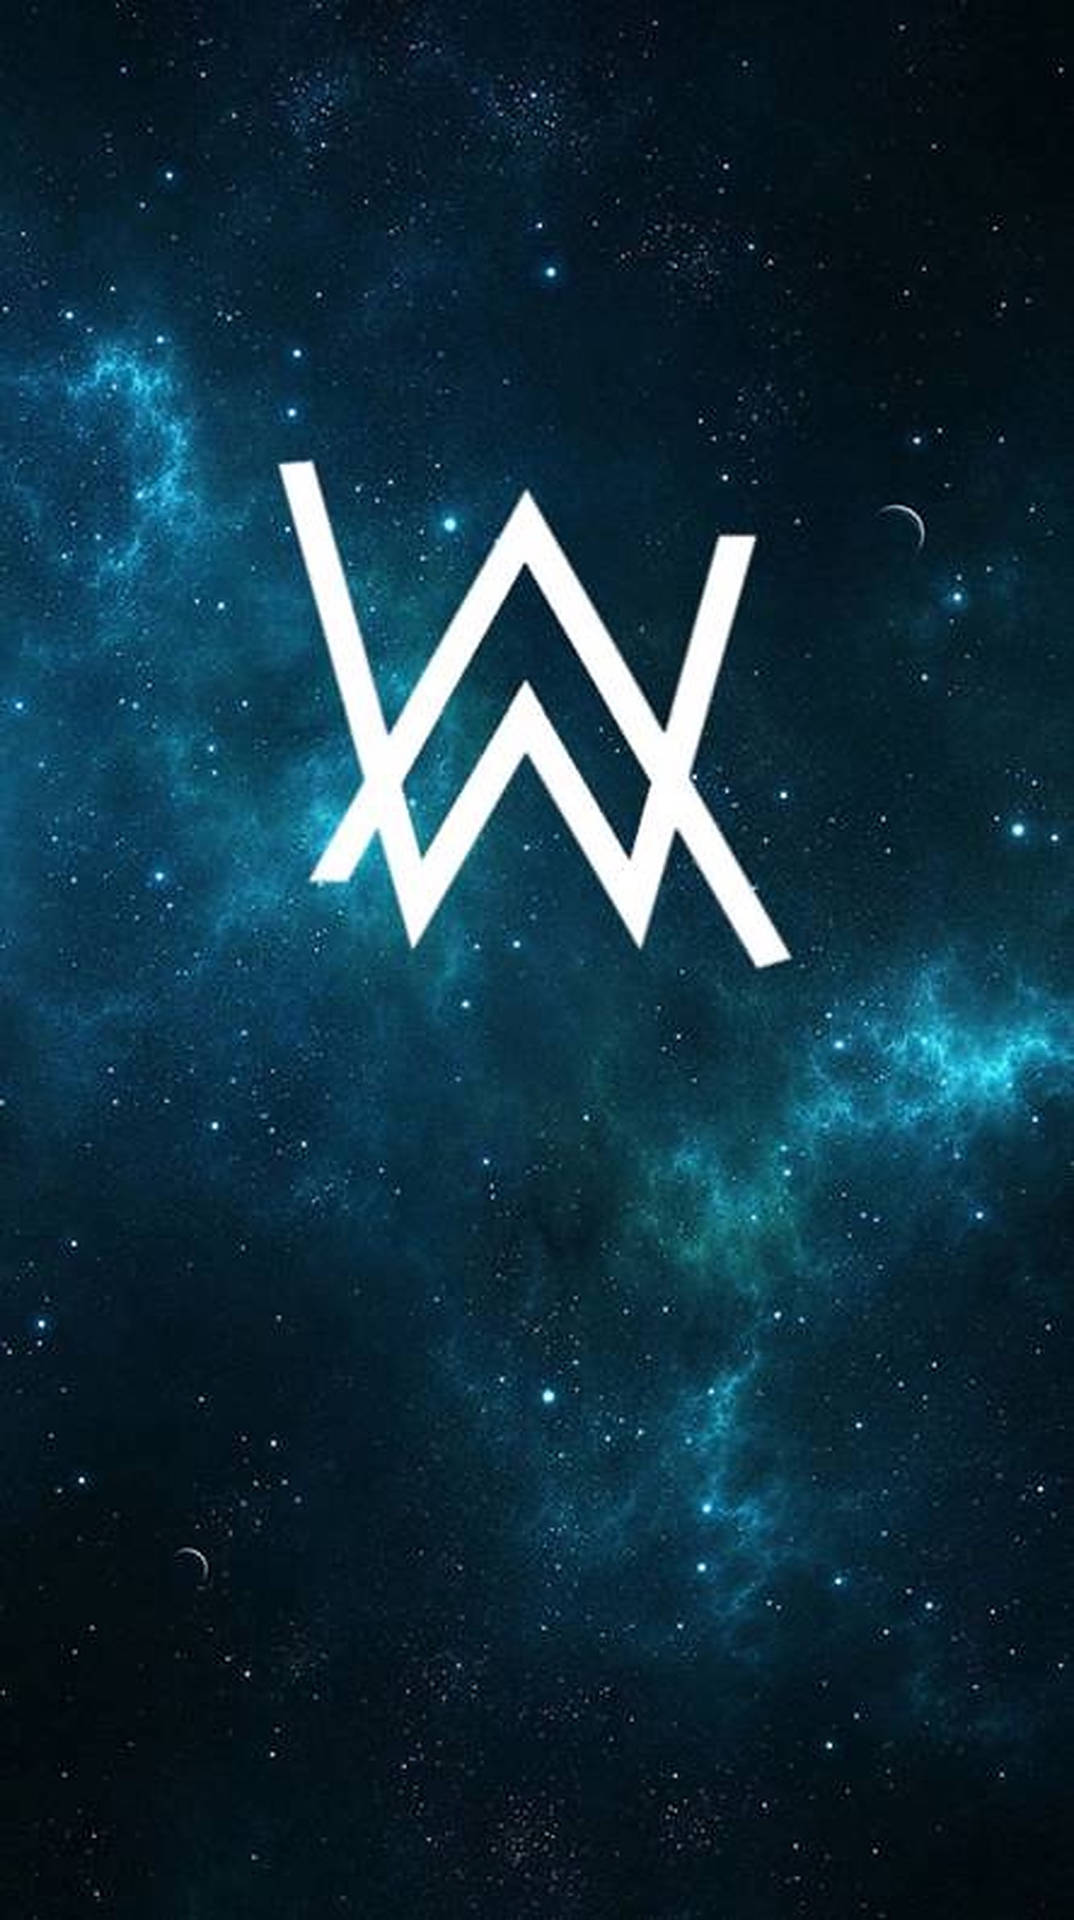 Alan Walker Emblem In Space Background